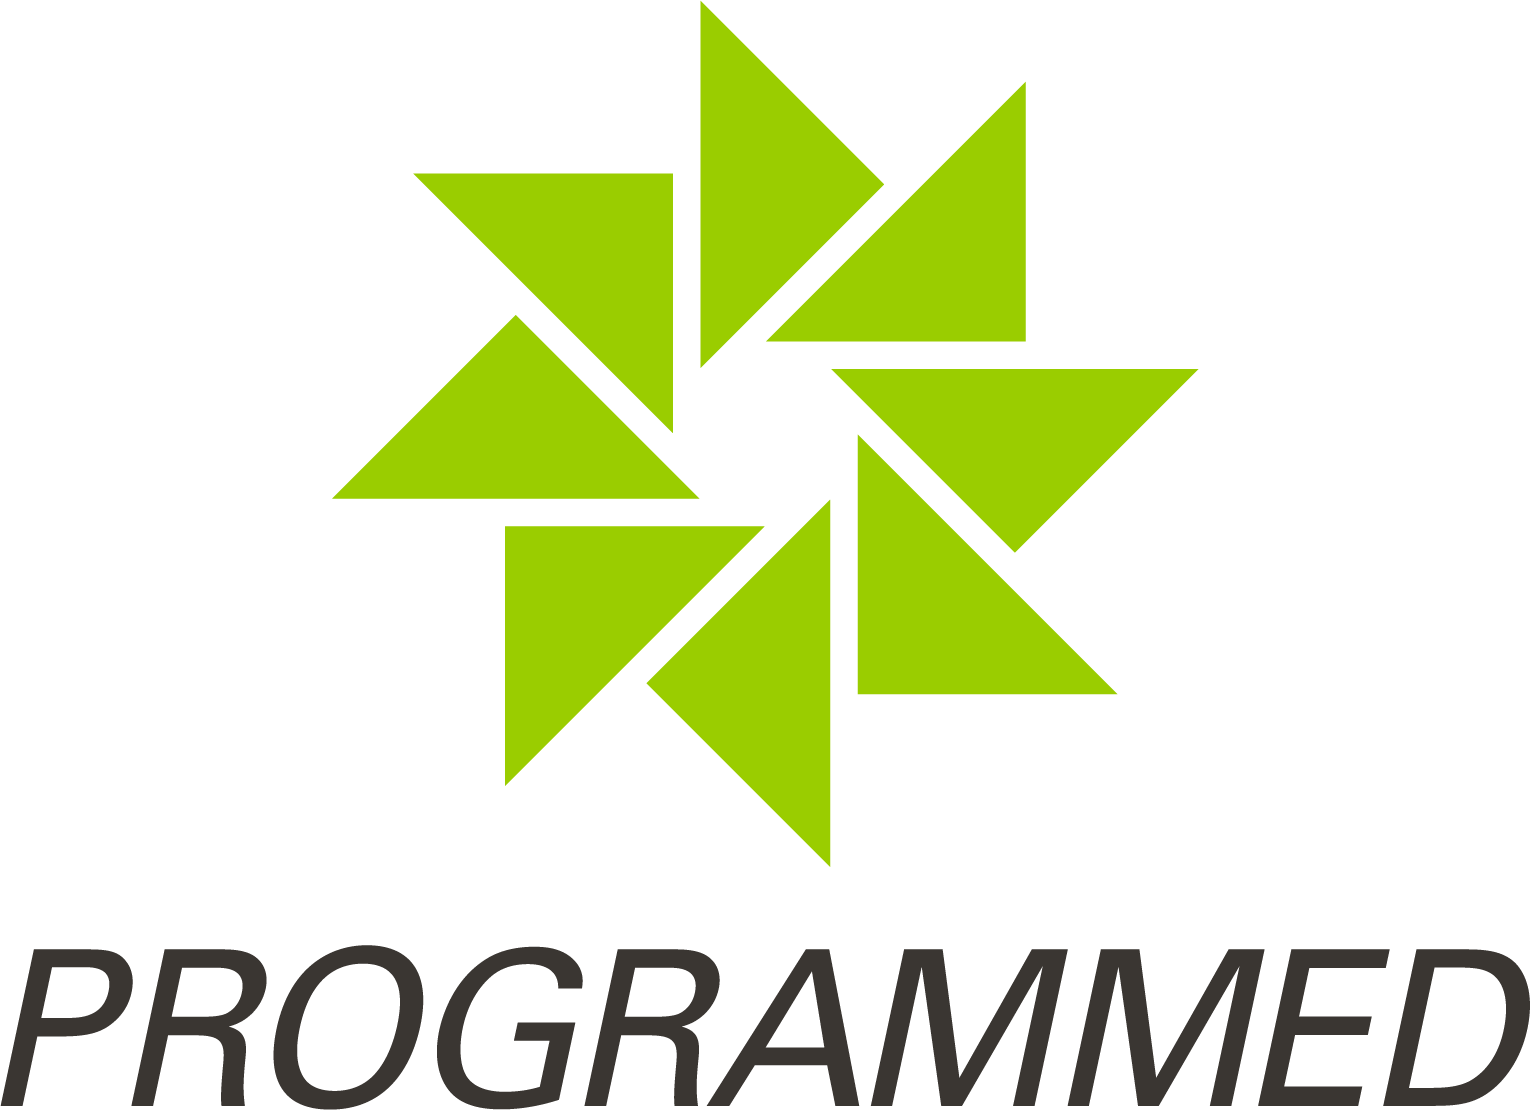 Programmed logo